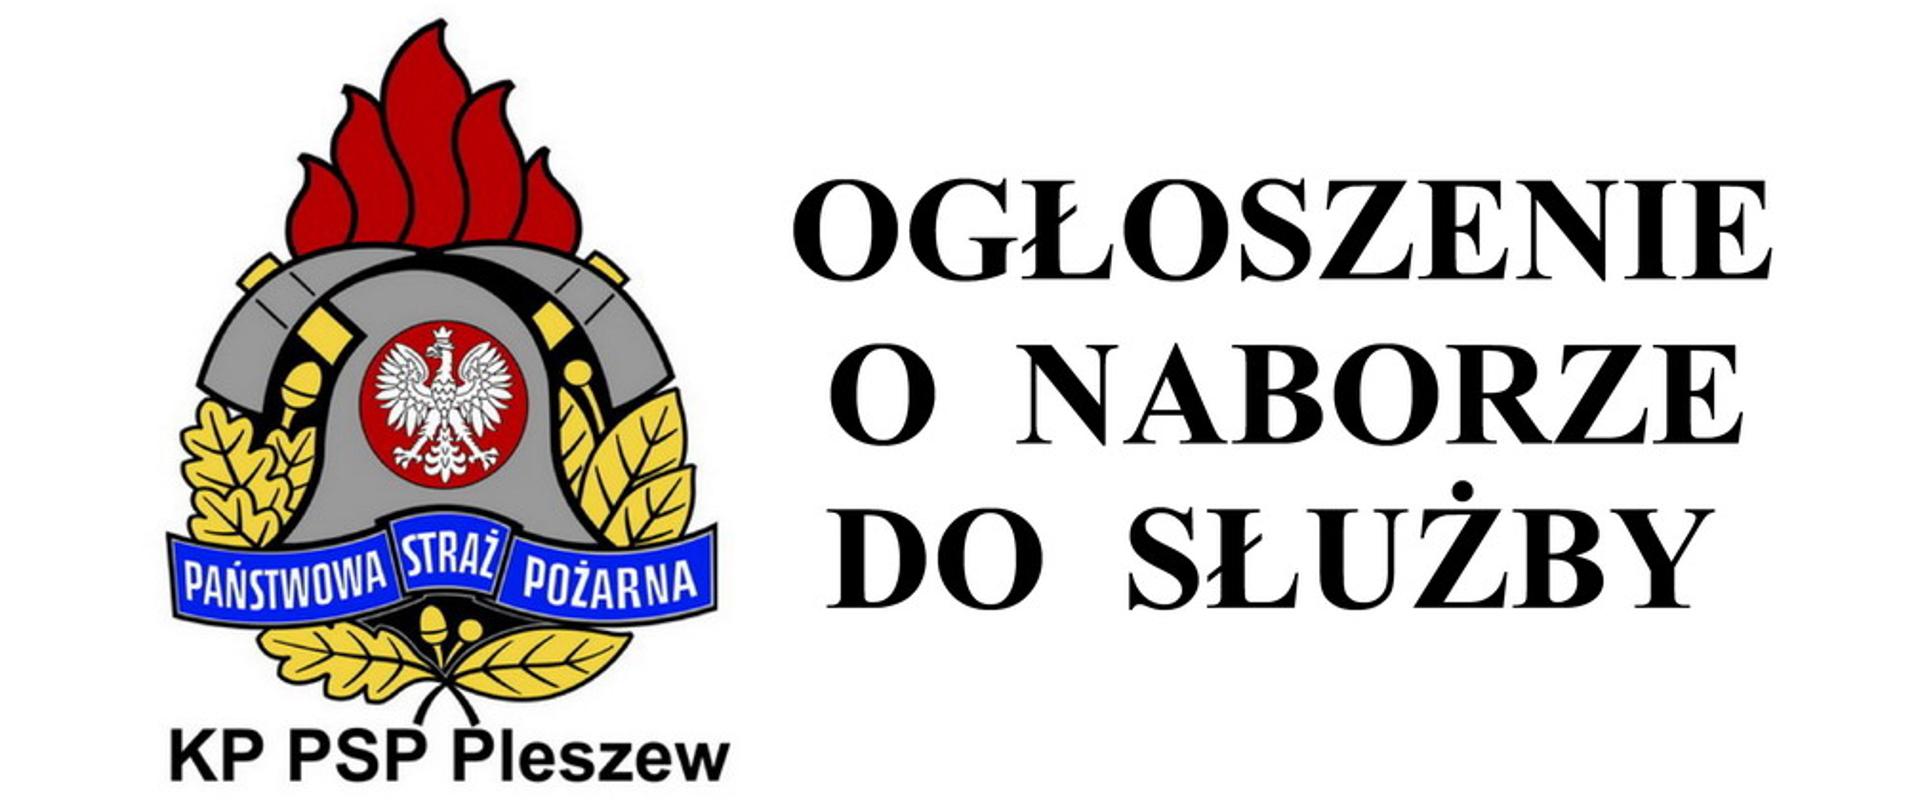 Logotyp przedstawiający logo PSP z podpisem KP PSP Pleszew, z prawej strony napis ogłoszenie o naborze do służby